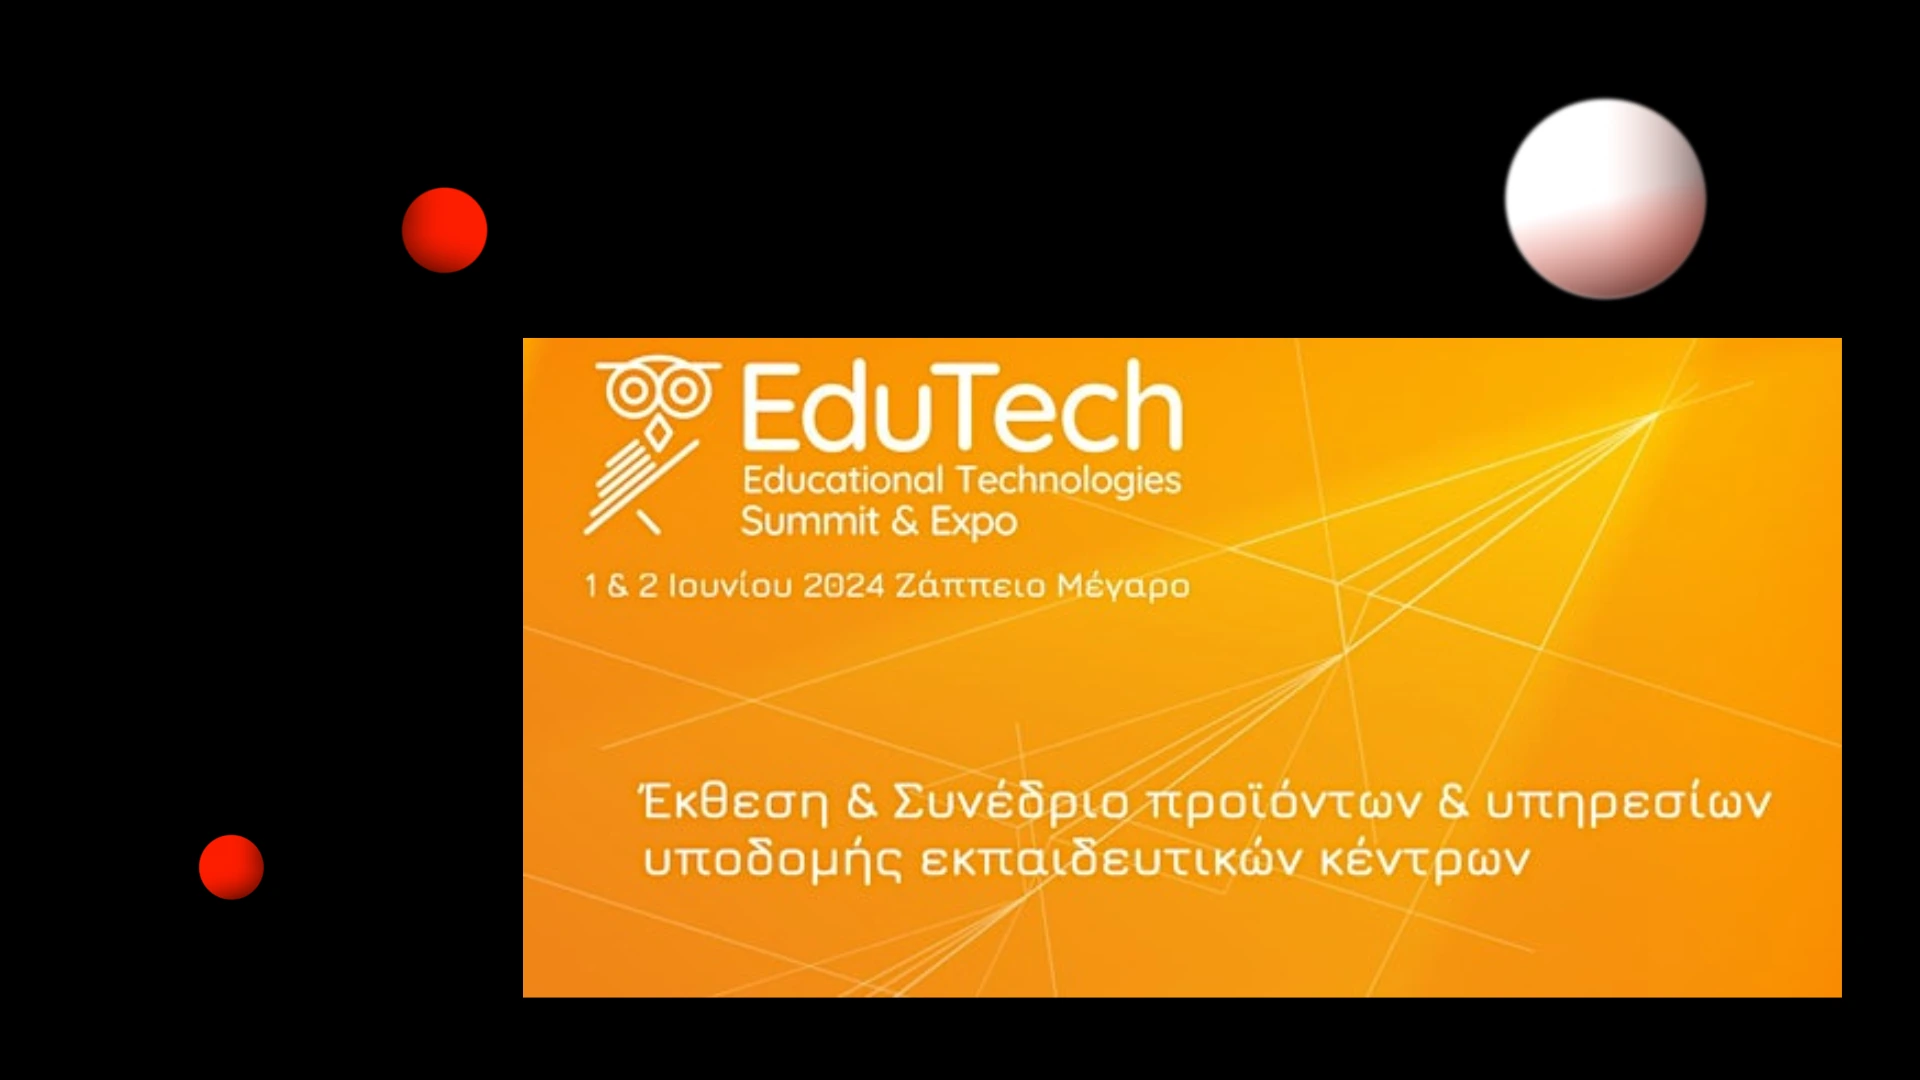 EduTech Expo and Summit 2024